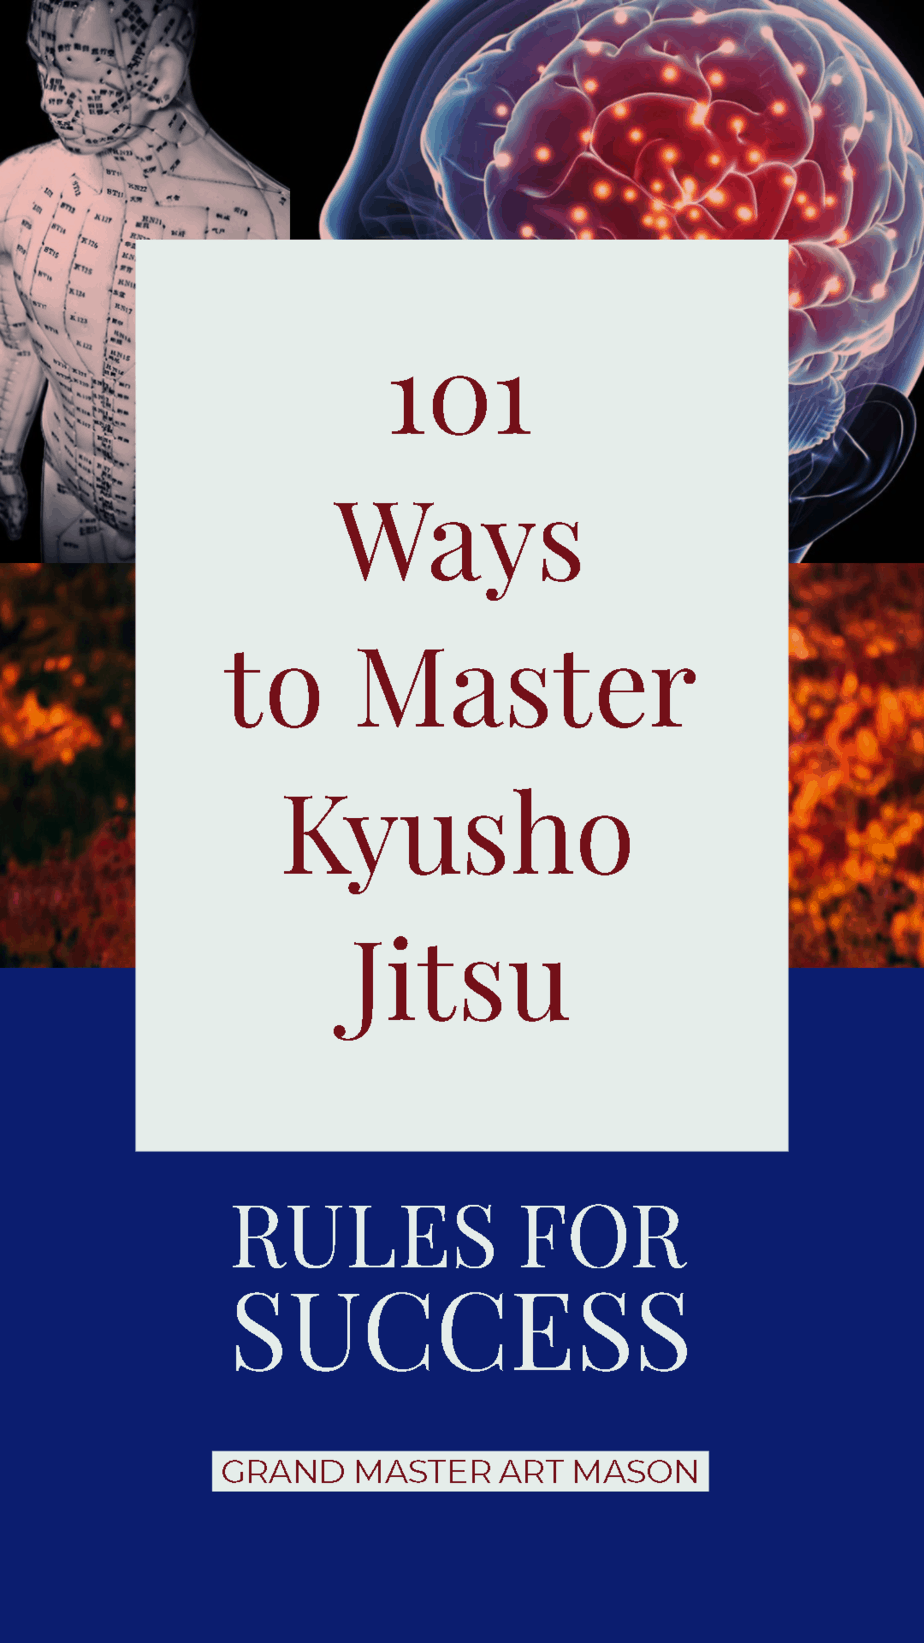 * 101 Way to Master Kyusho Jitsu